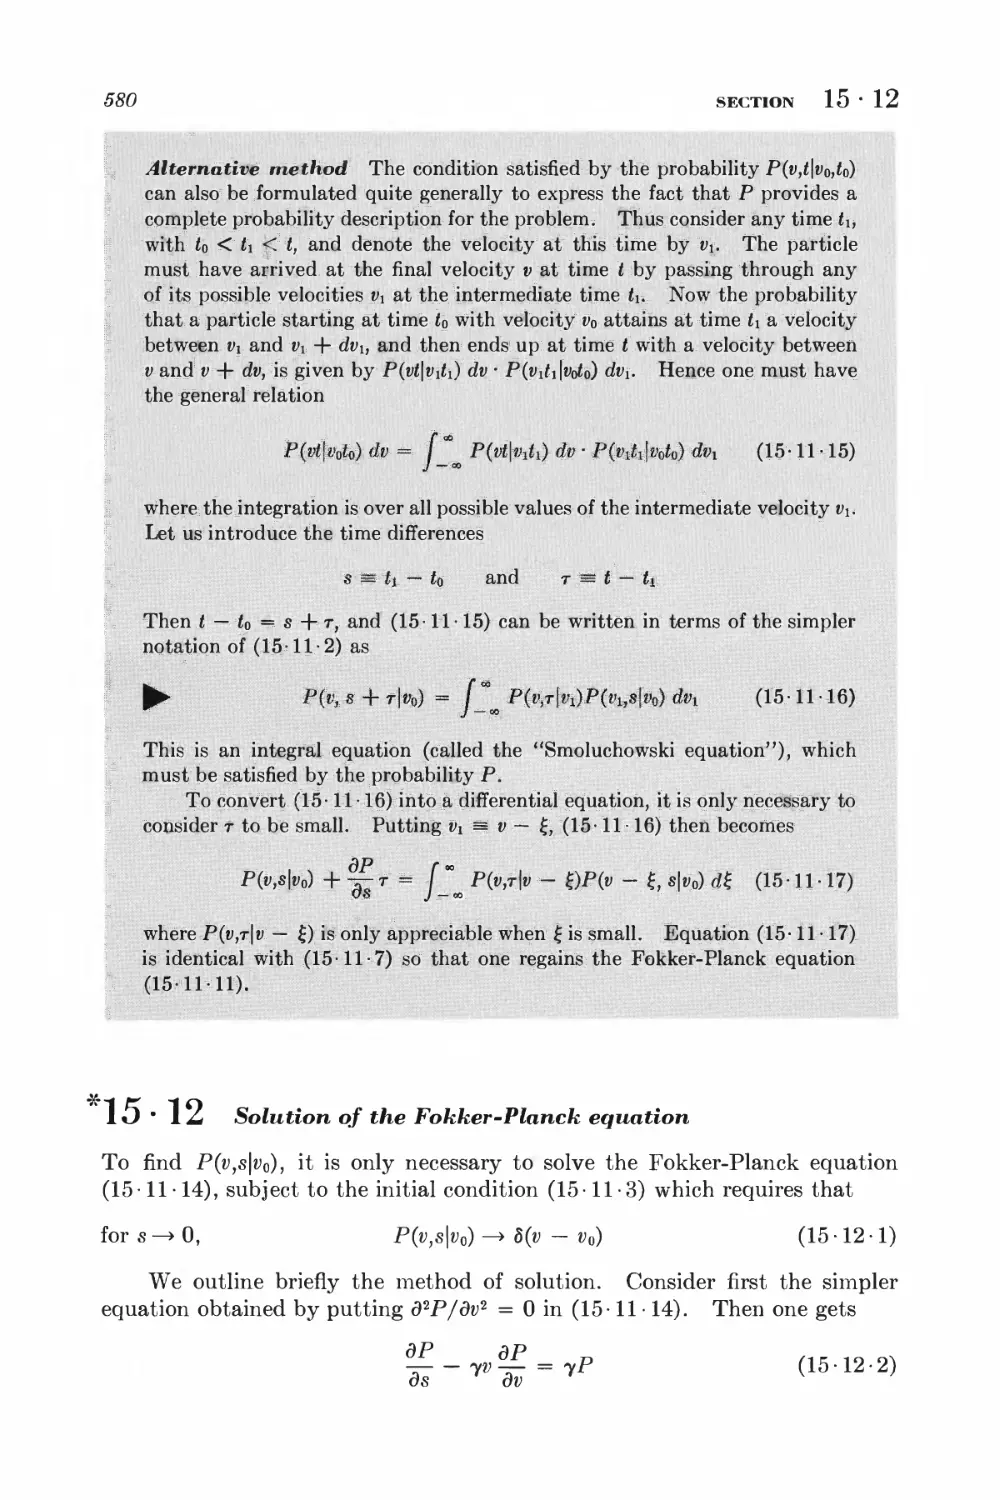 15.12 Solution of the Fokker-Planck equation